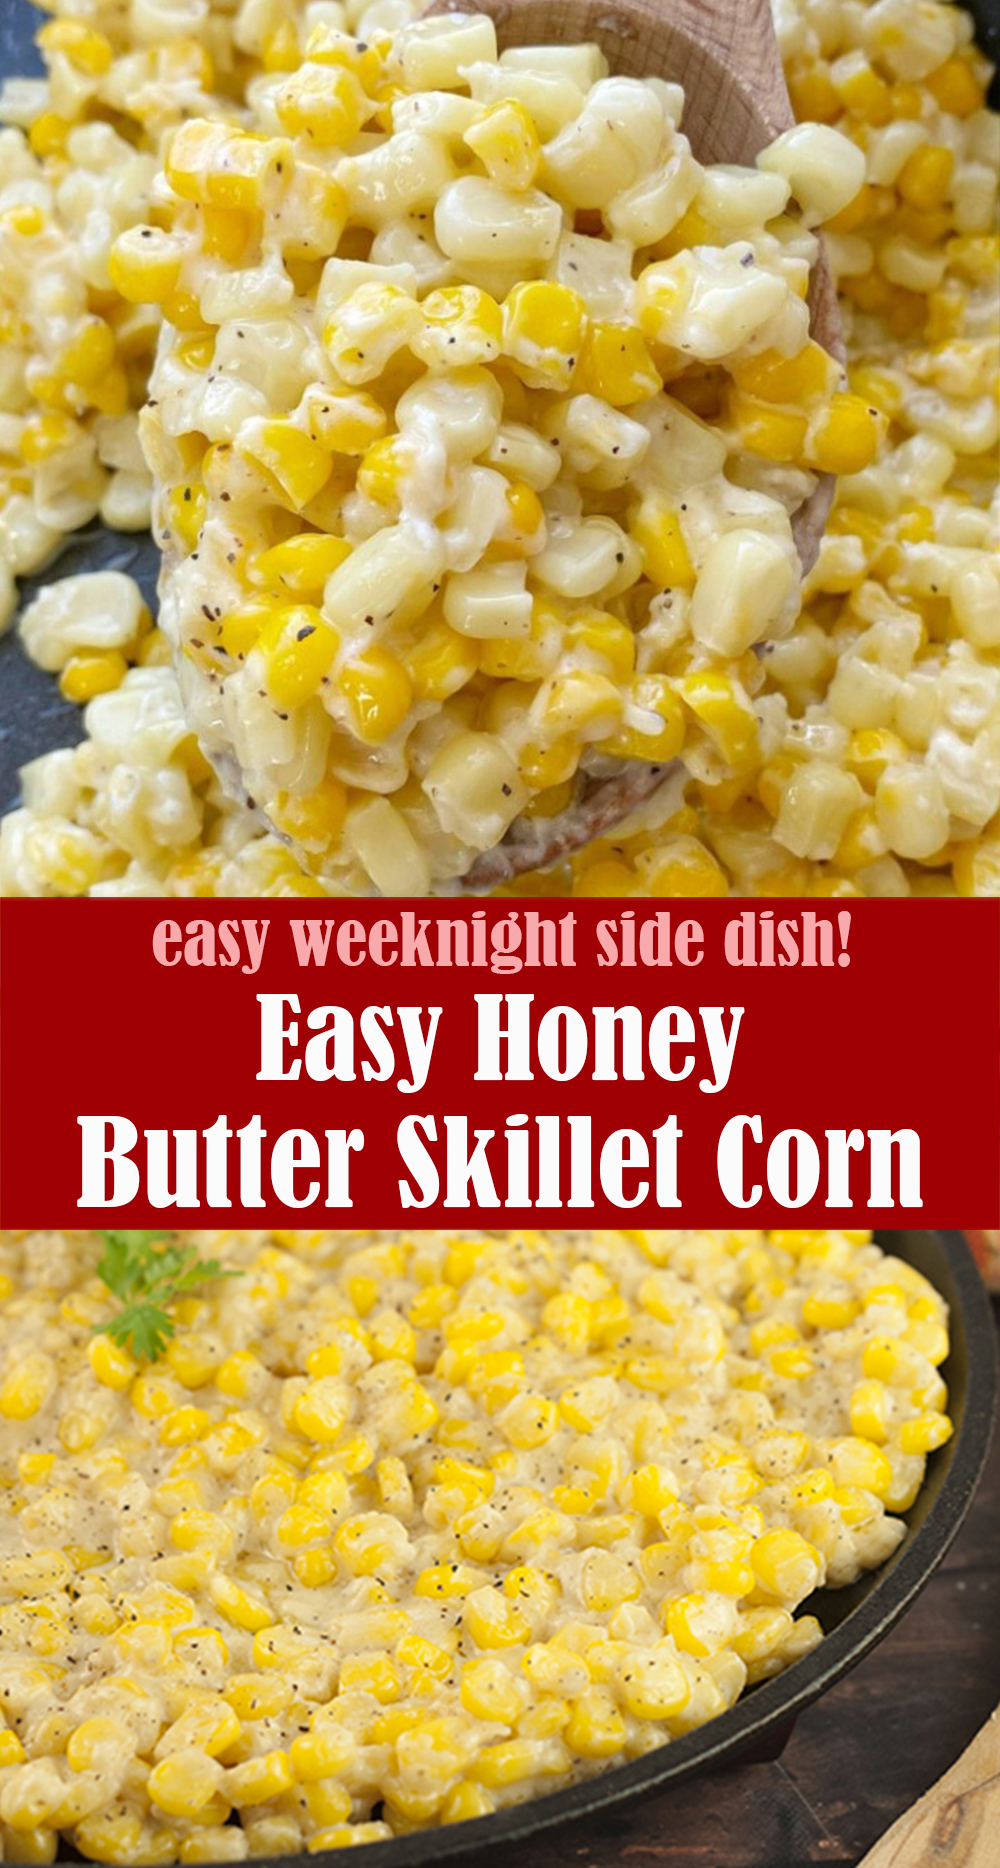 Easy Honey Butter Skillet Corn